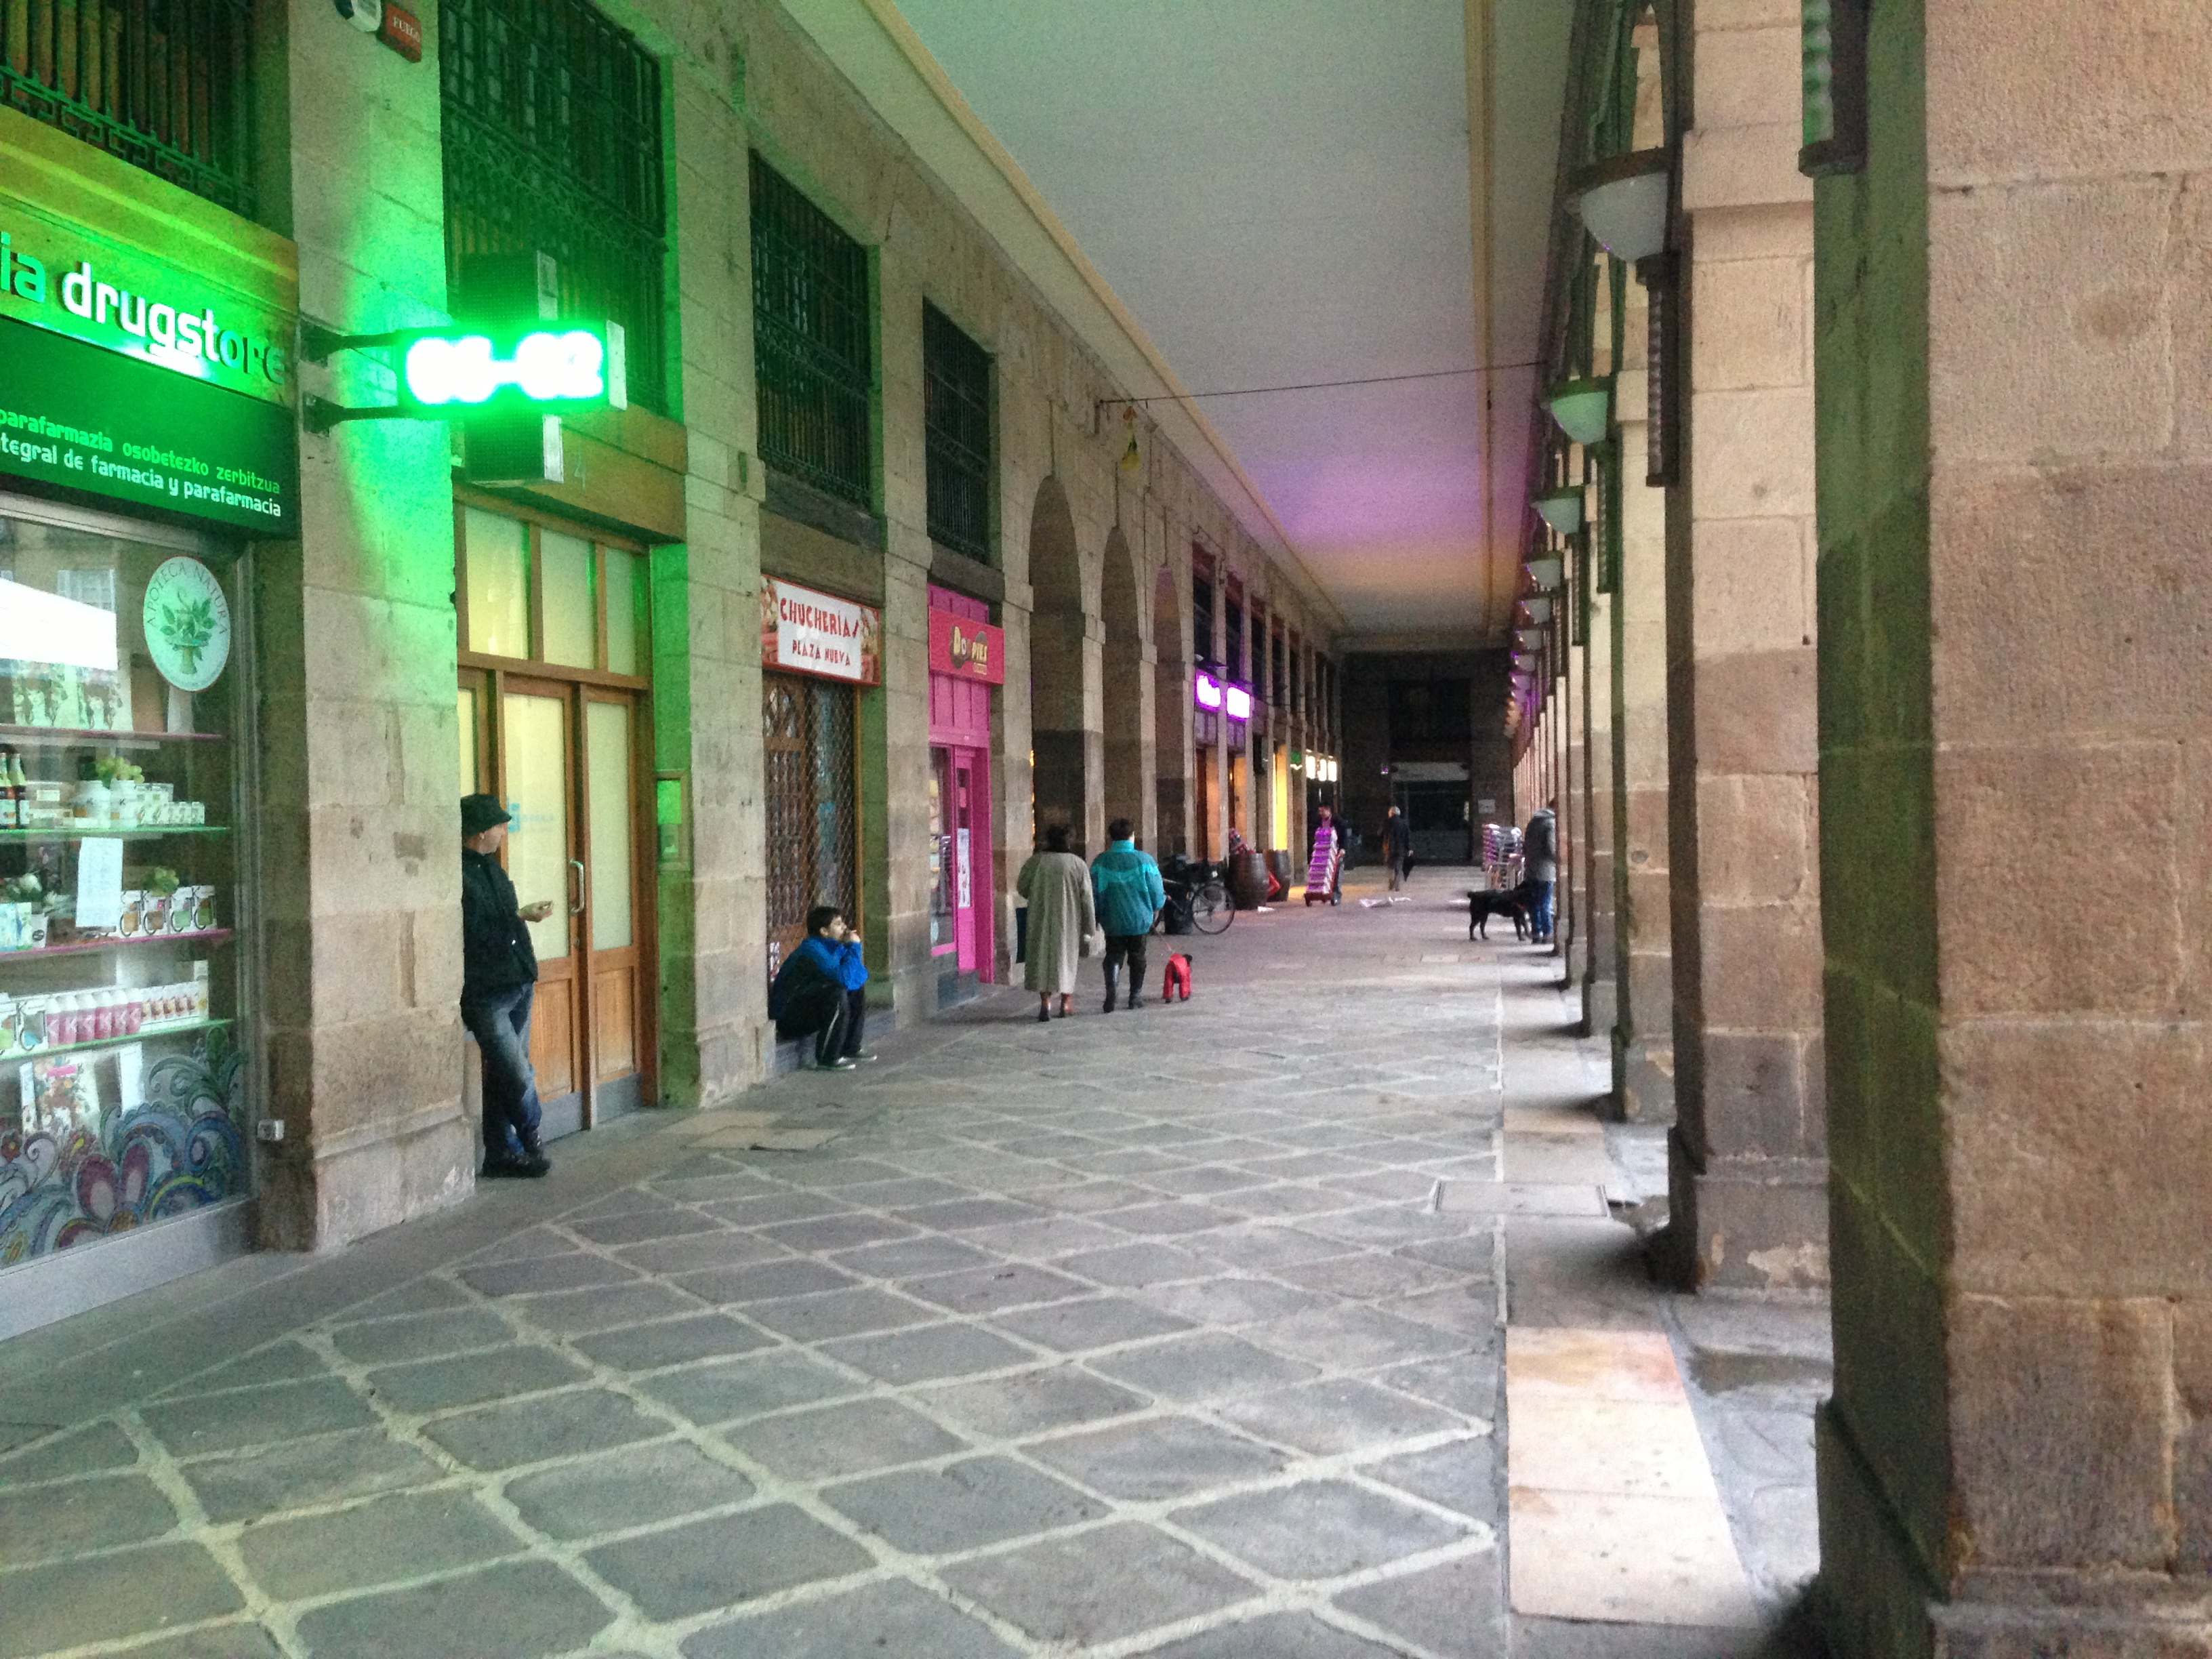 Under the arcade in Plaza Nueva Bilbao, February 2013